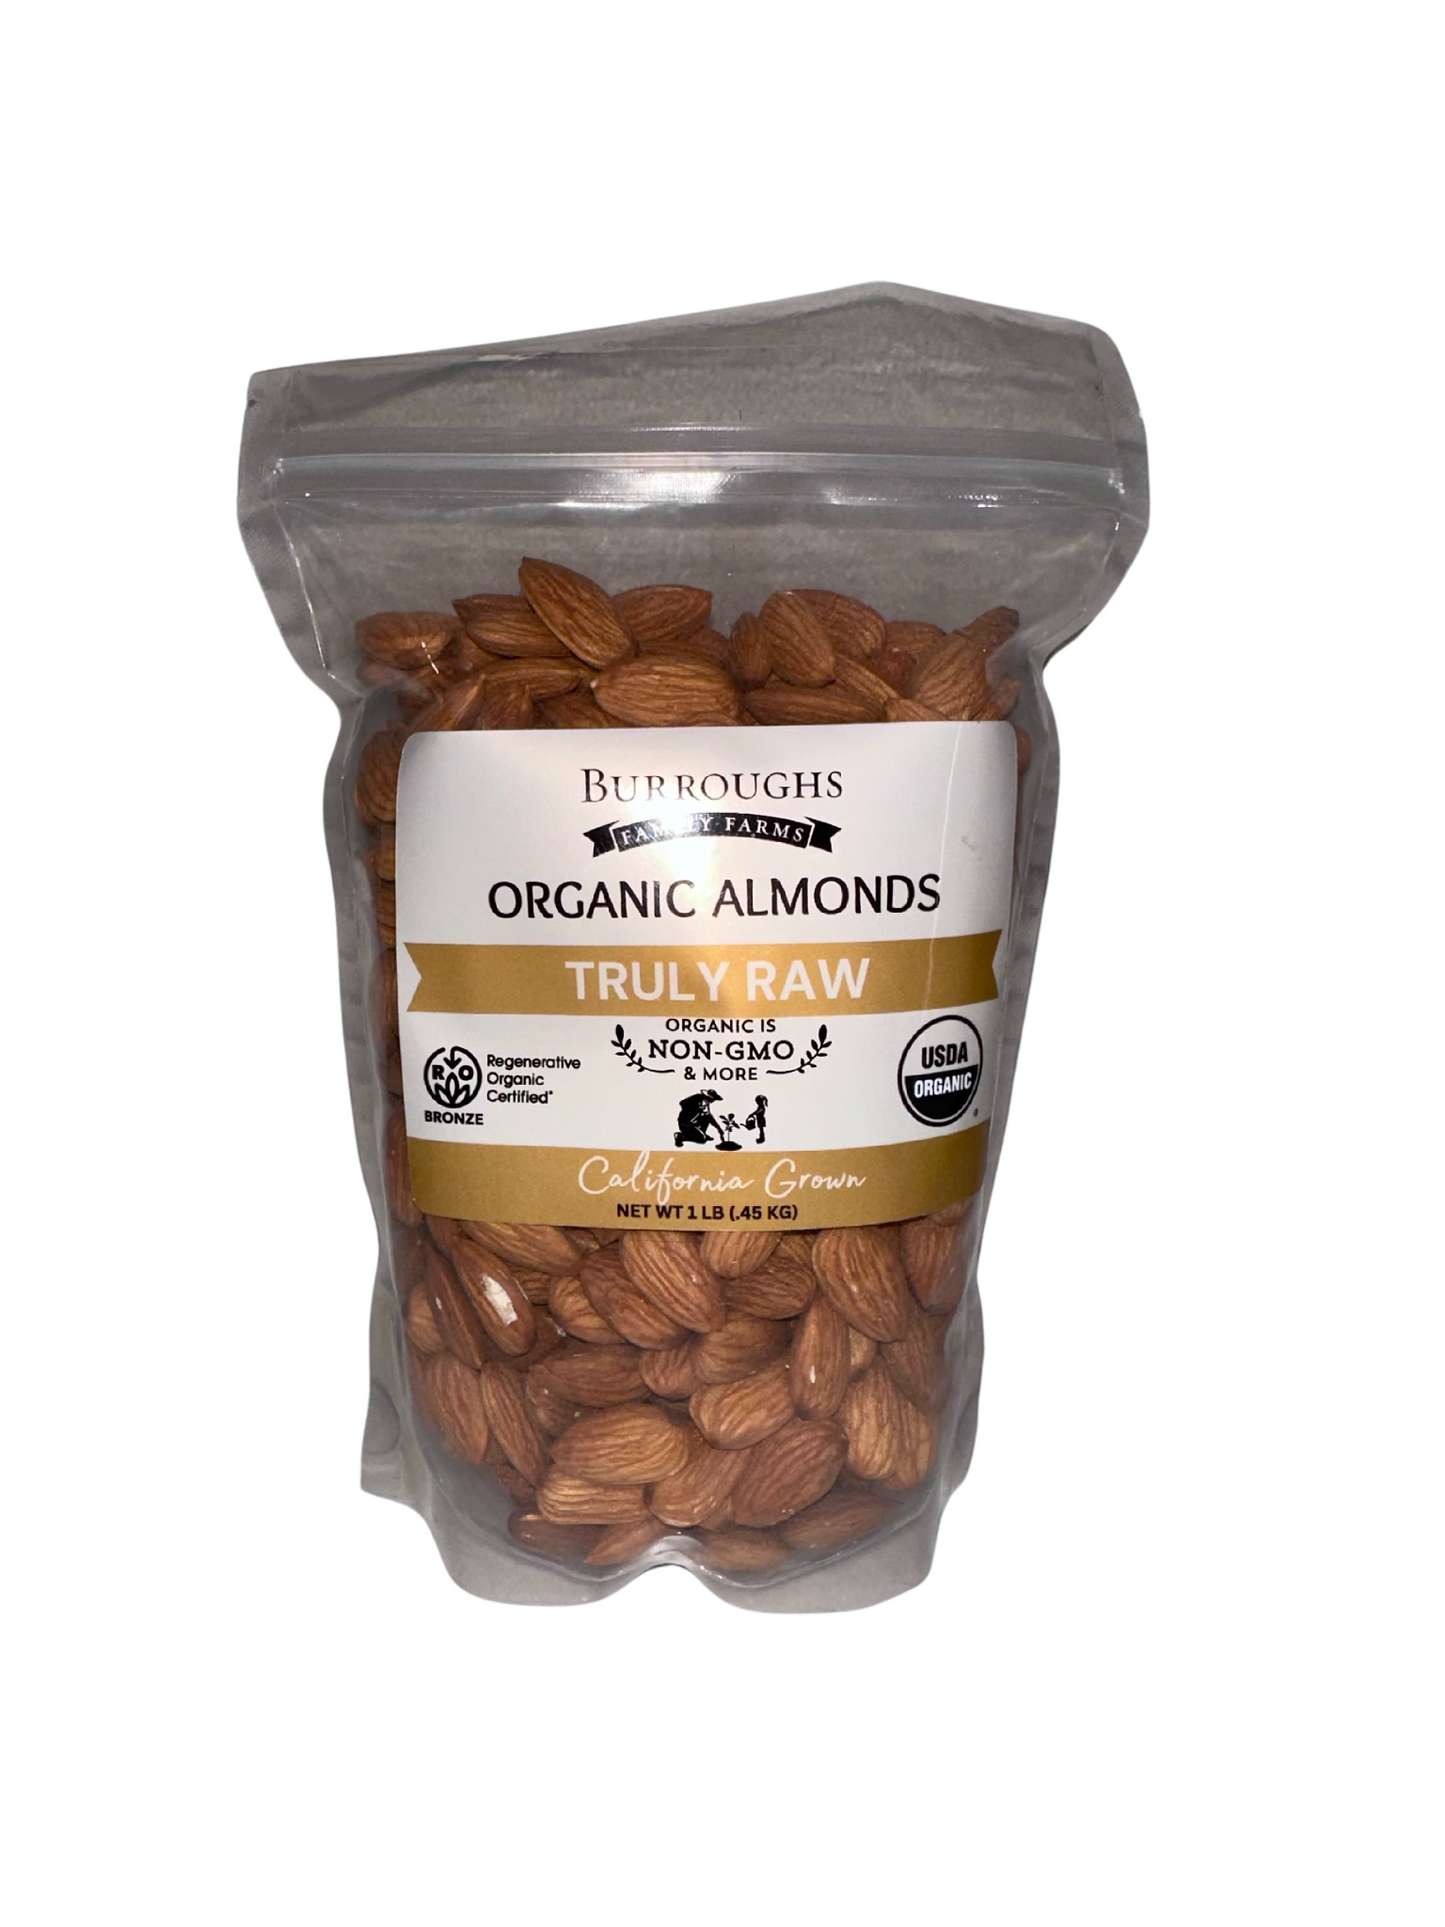 1 pound truly raw almonds